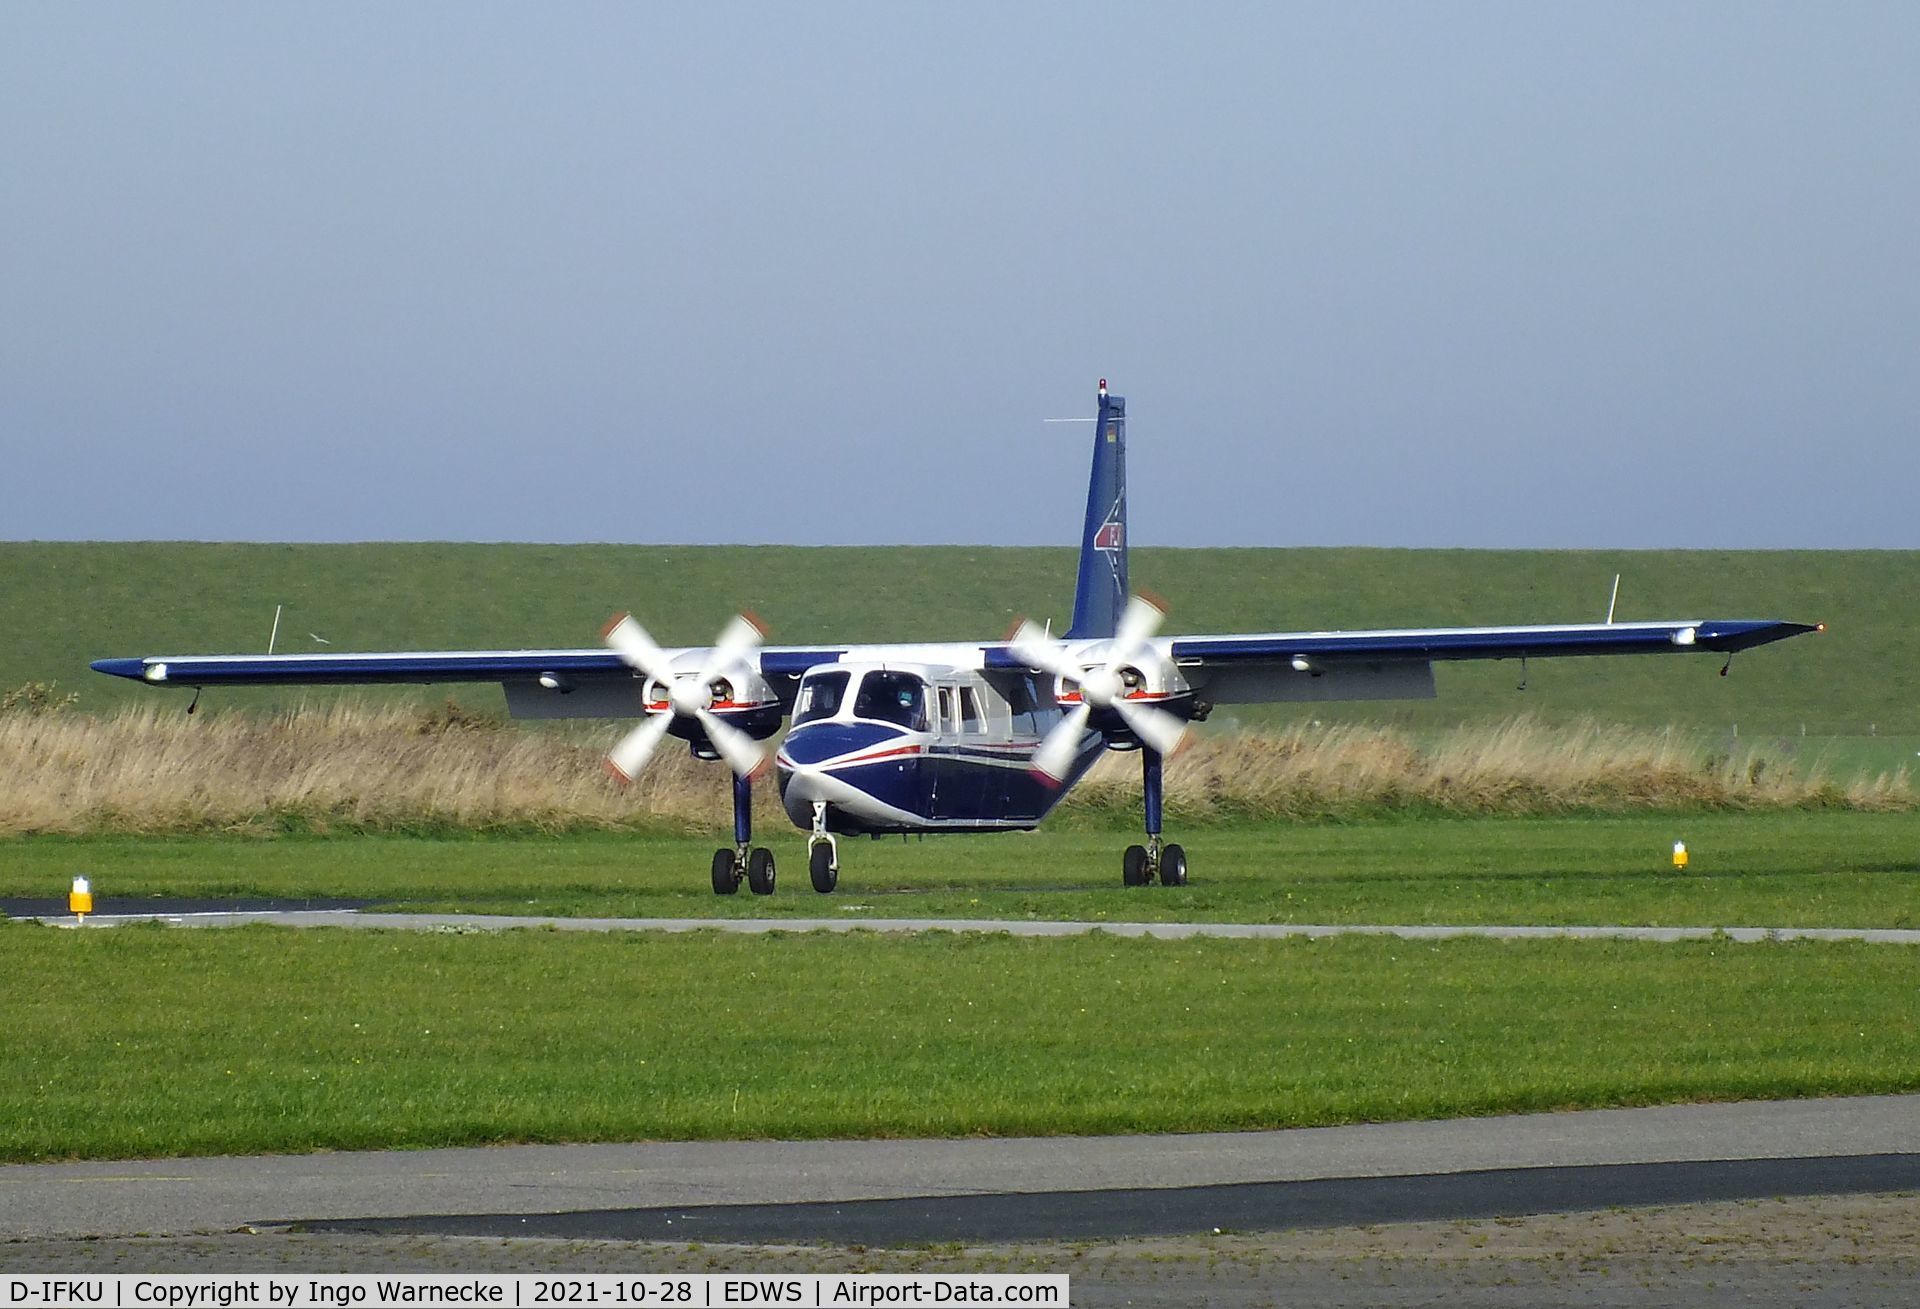 D-IFKU, 1996 Britten-Norman BN-2B-20 Islander C/N 2290, Britten-Norman BN-2B-20 Islander of FLN Frisia Luftverkehr at Norden-Norddeich airfield